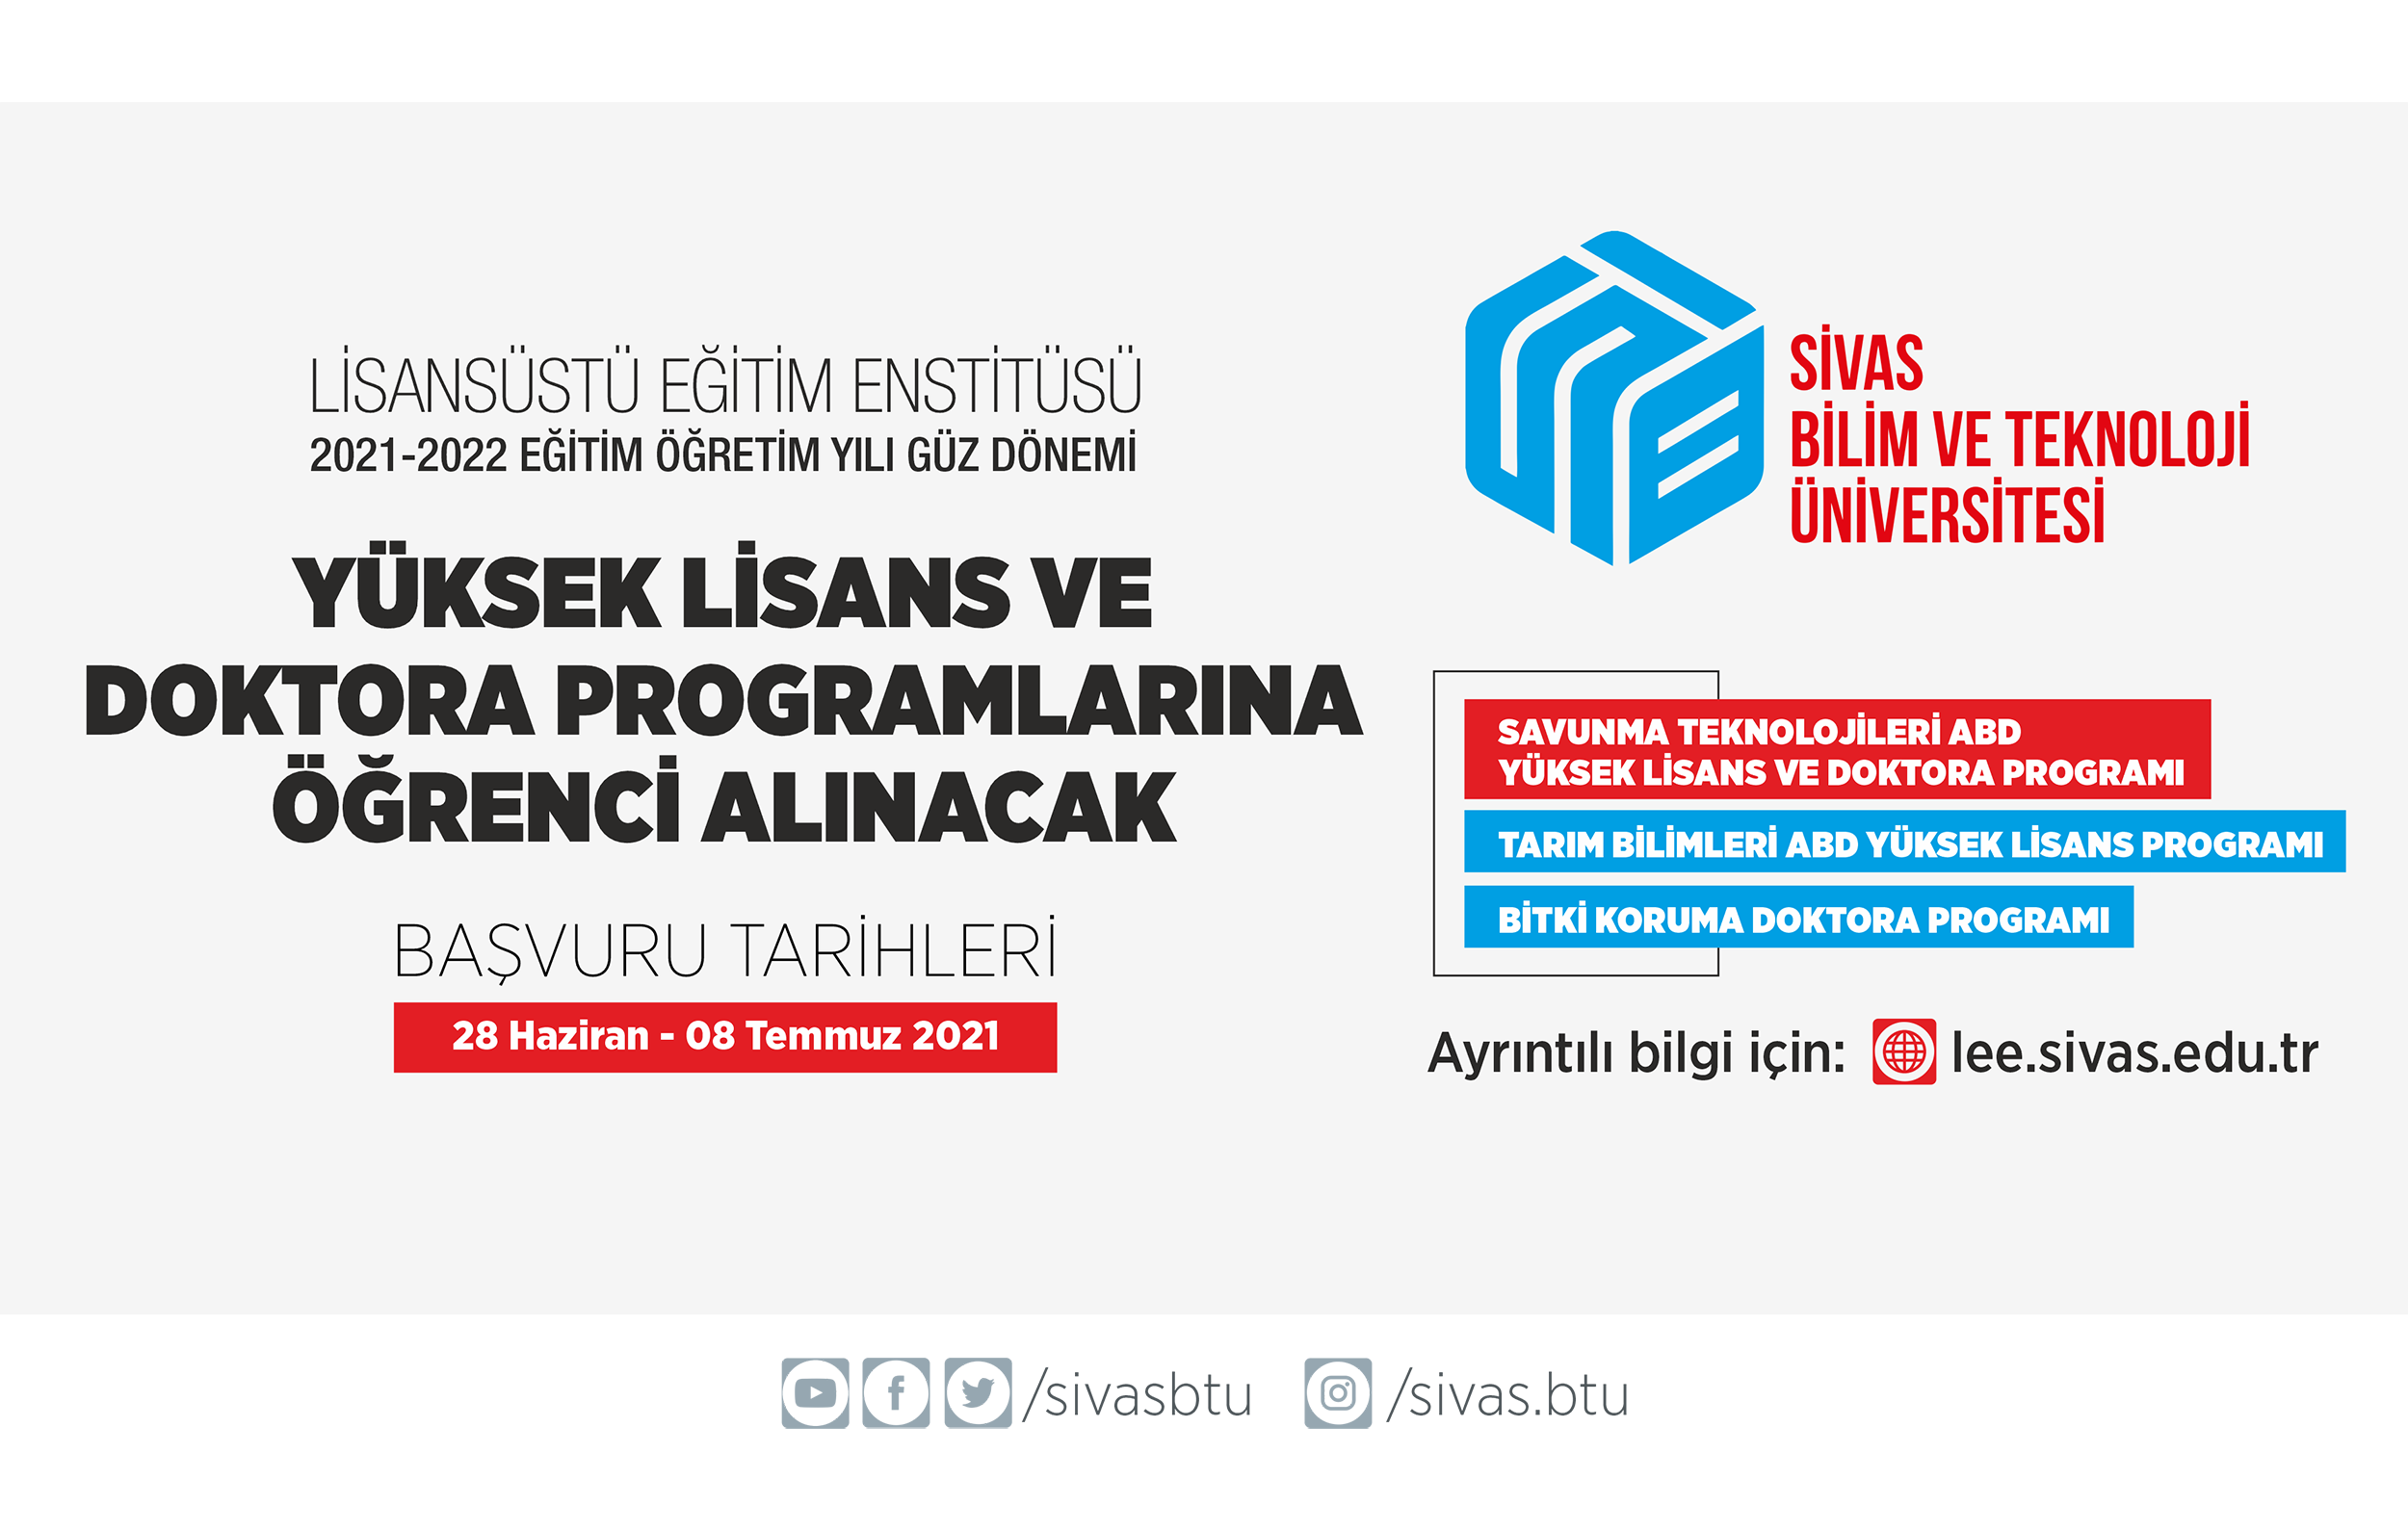 Sivas Bilim ve Teknoloji Üniversitesi Lisansüstü Eğitim Enstitüsüne Yüksek Lisans ve Doktora Öğrencileri Alınacak